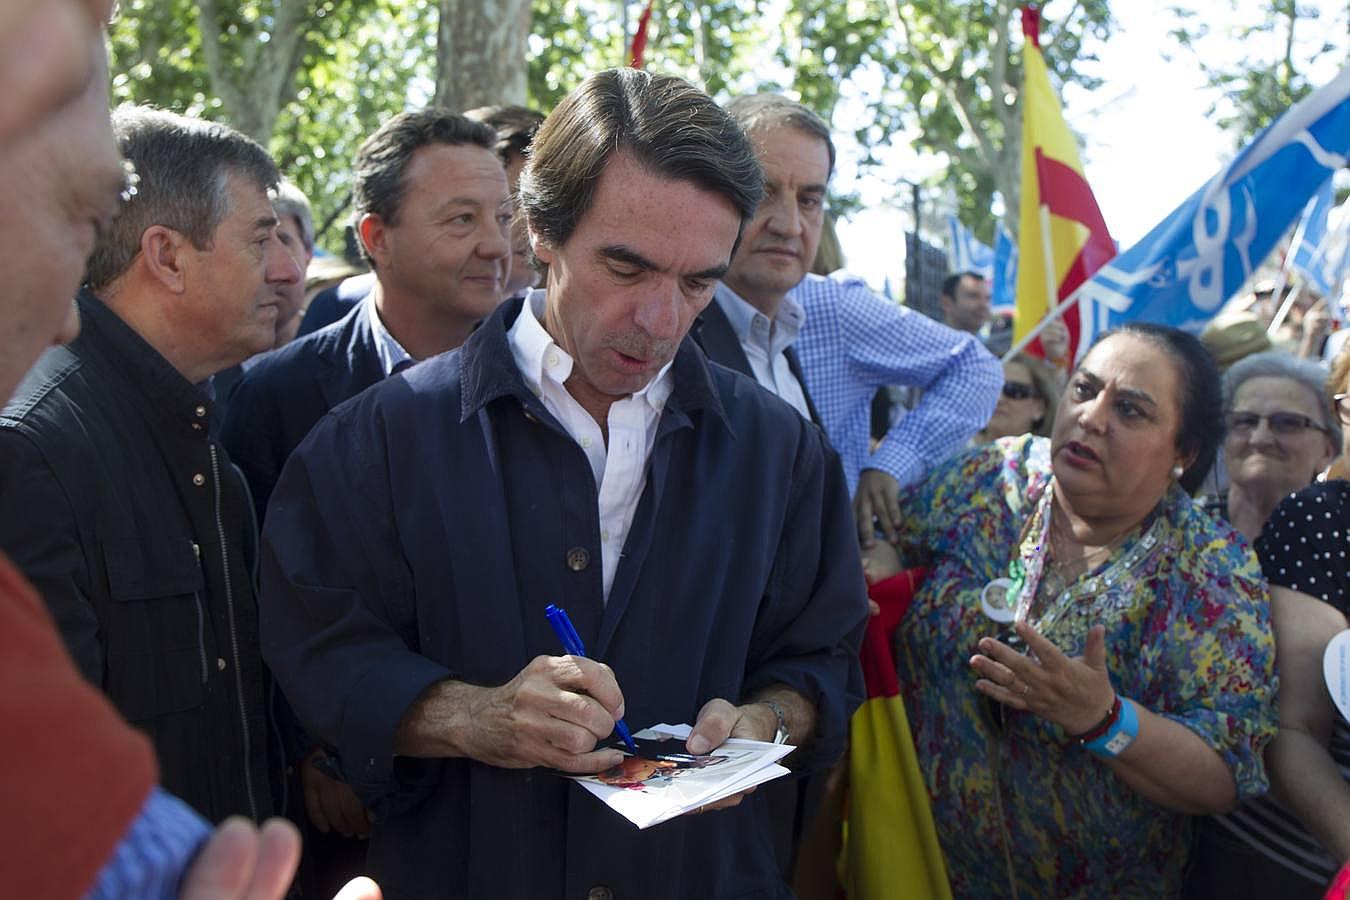 El presidente de honor del PP, José María Aznar firmaba autógrafos a su llegada al mitin en Madrid Río, acompañando a sus candidatas para la Comunidad y el Ayuntamiento